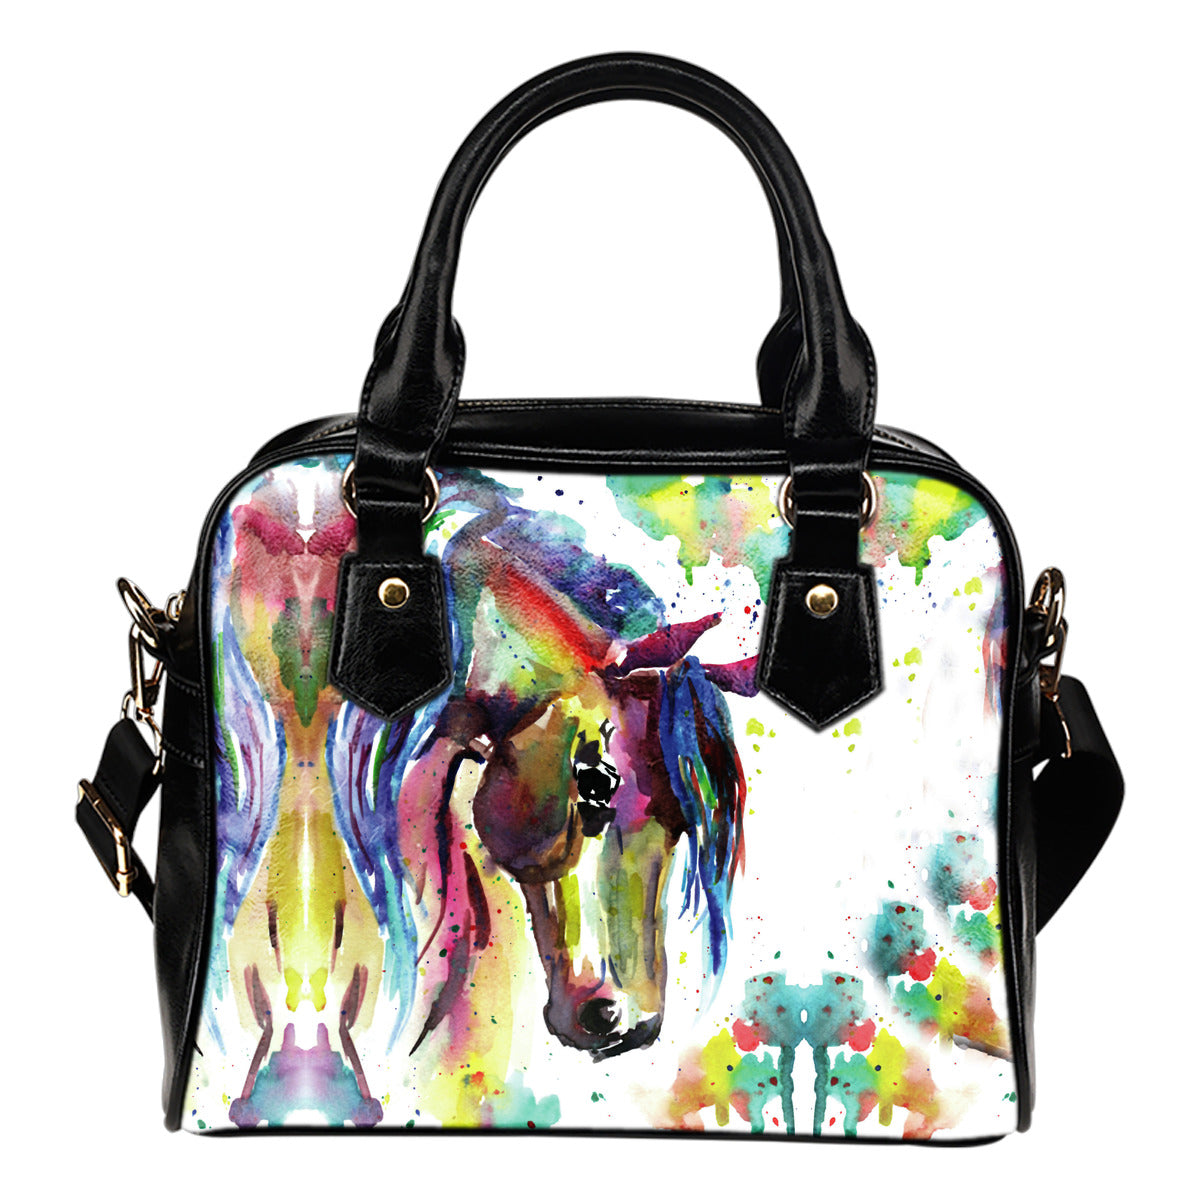 Watercolor Horse Handbag - Hello Moa